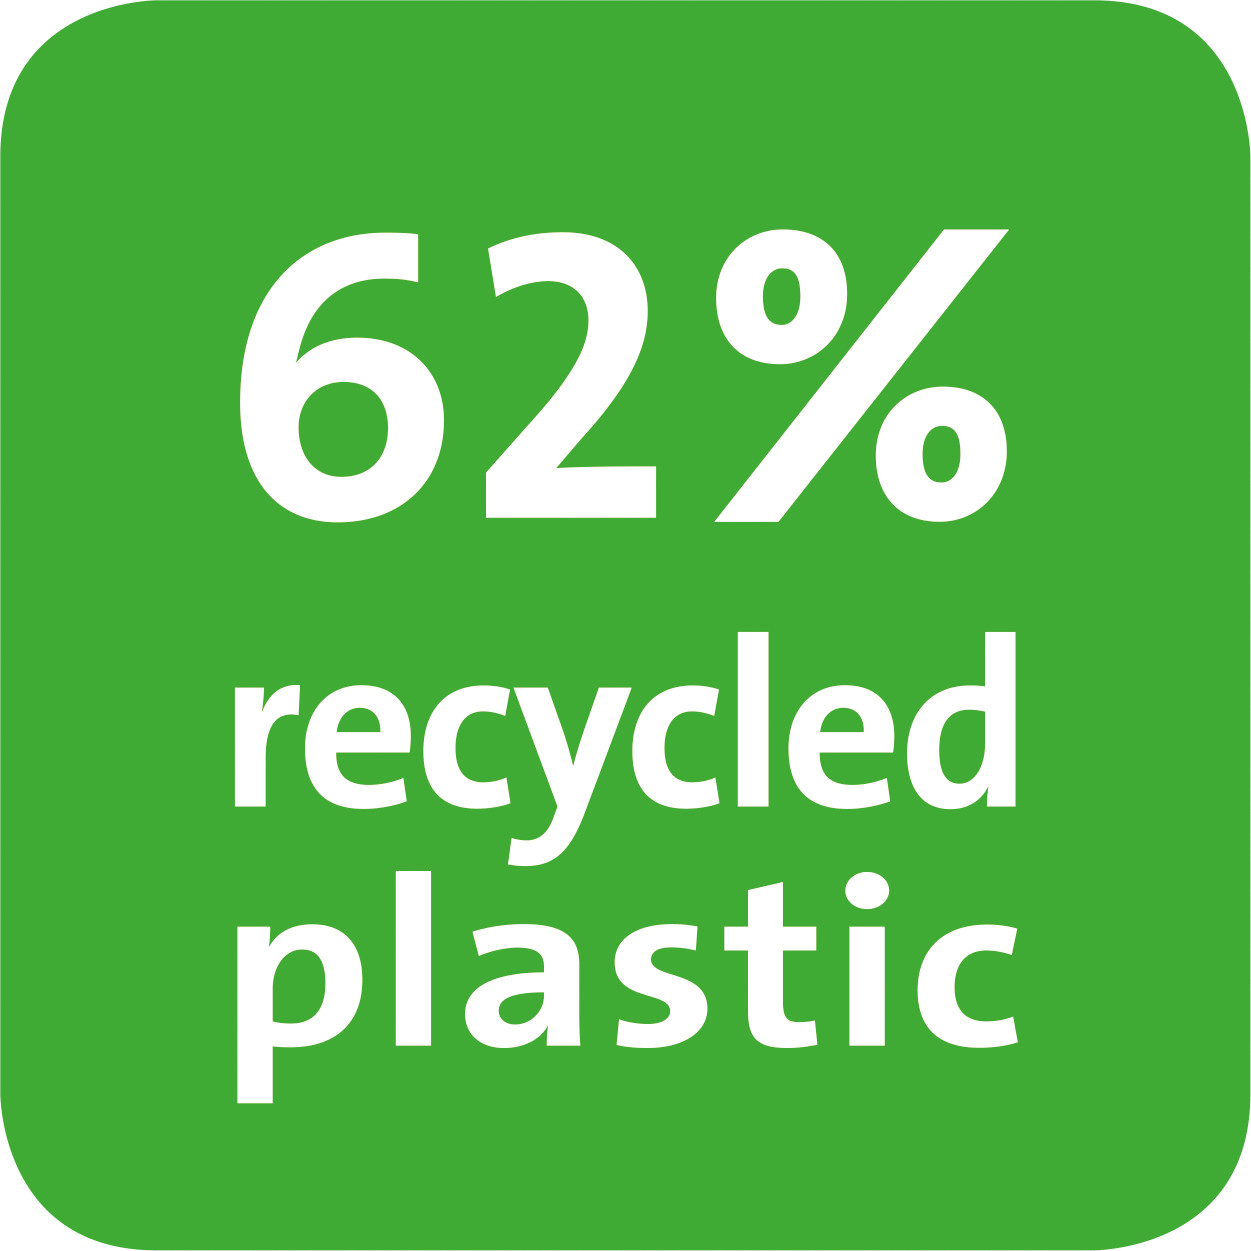 El valor indica el porcentaje de material reciclado del producto